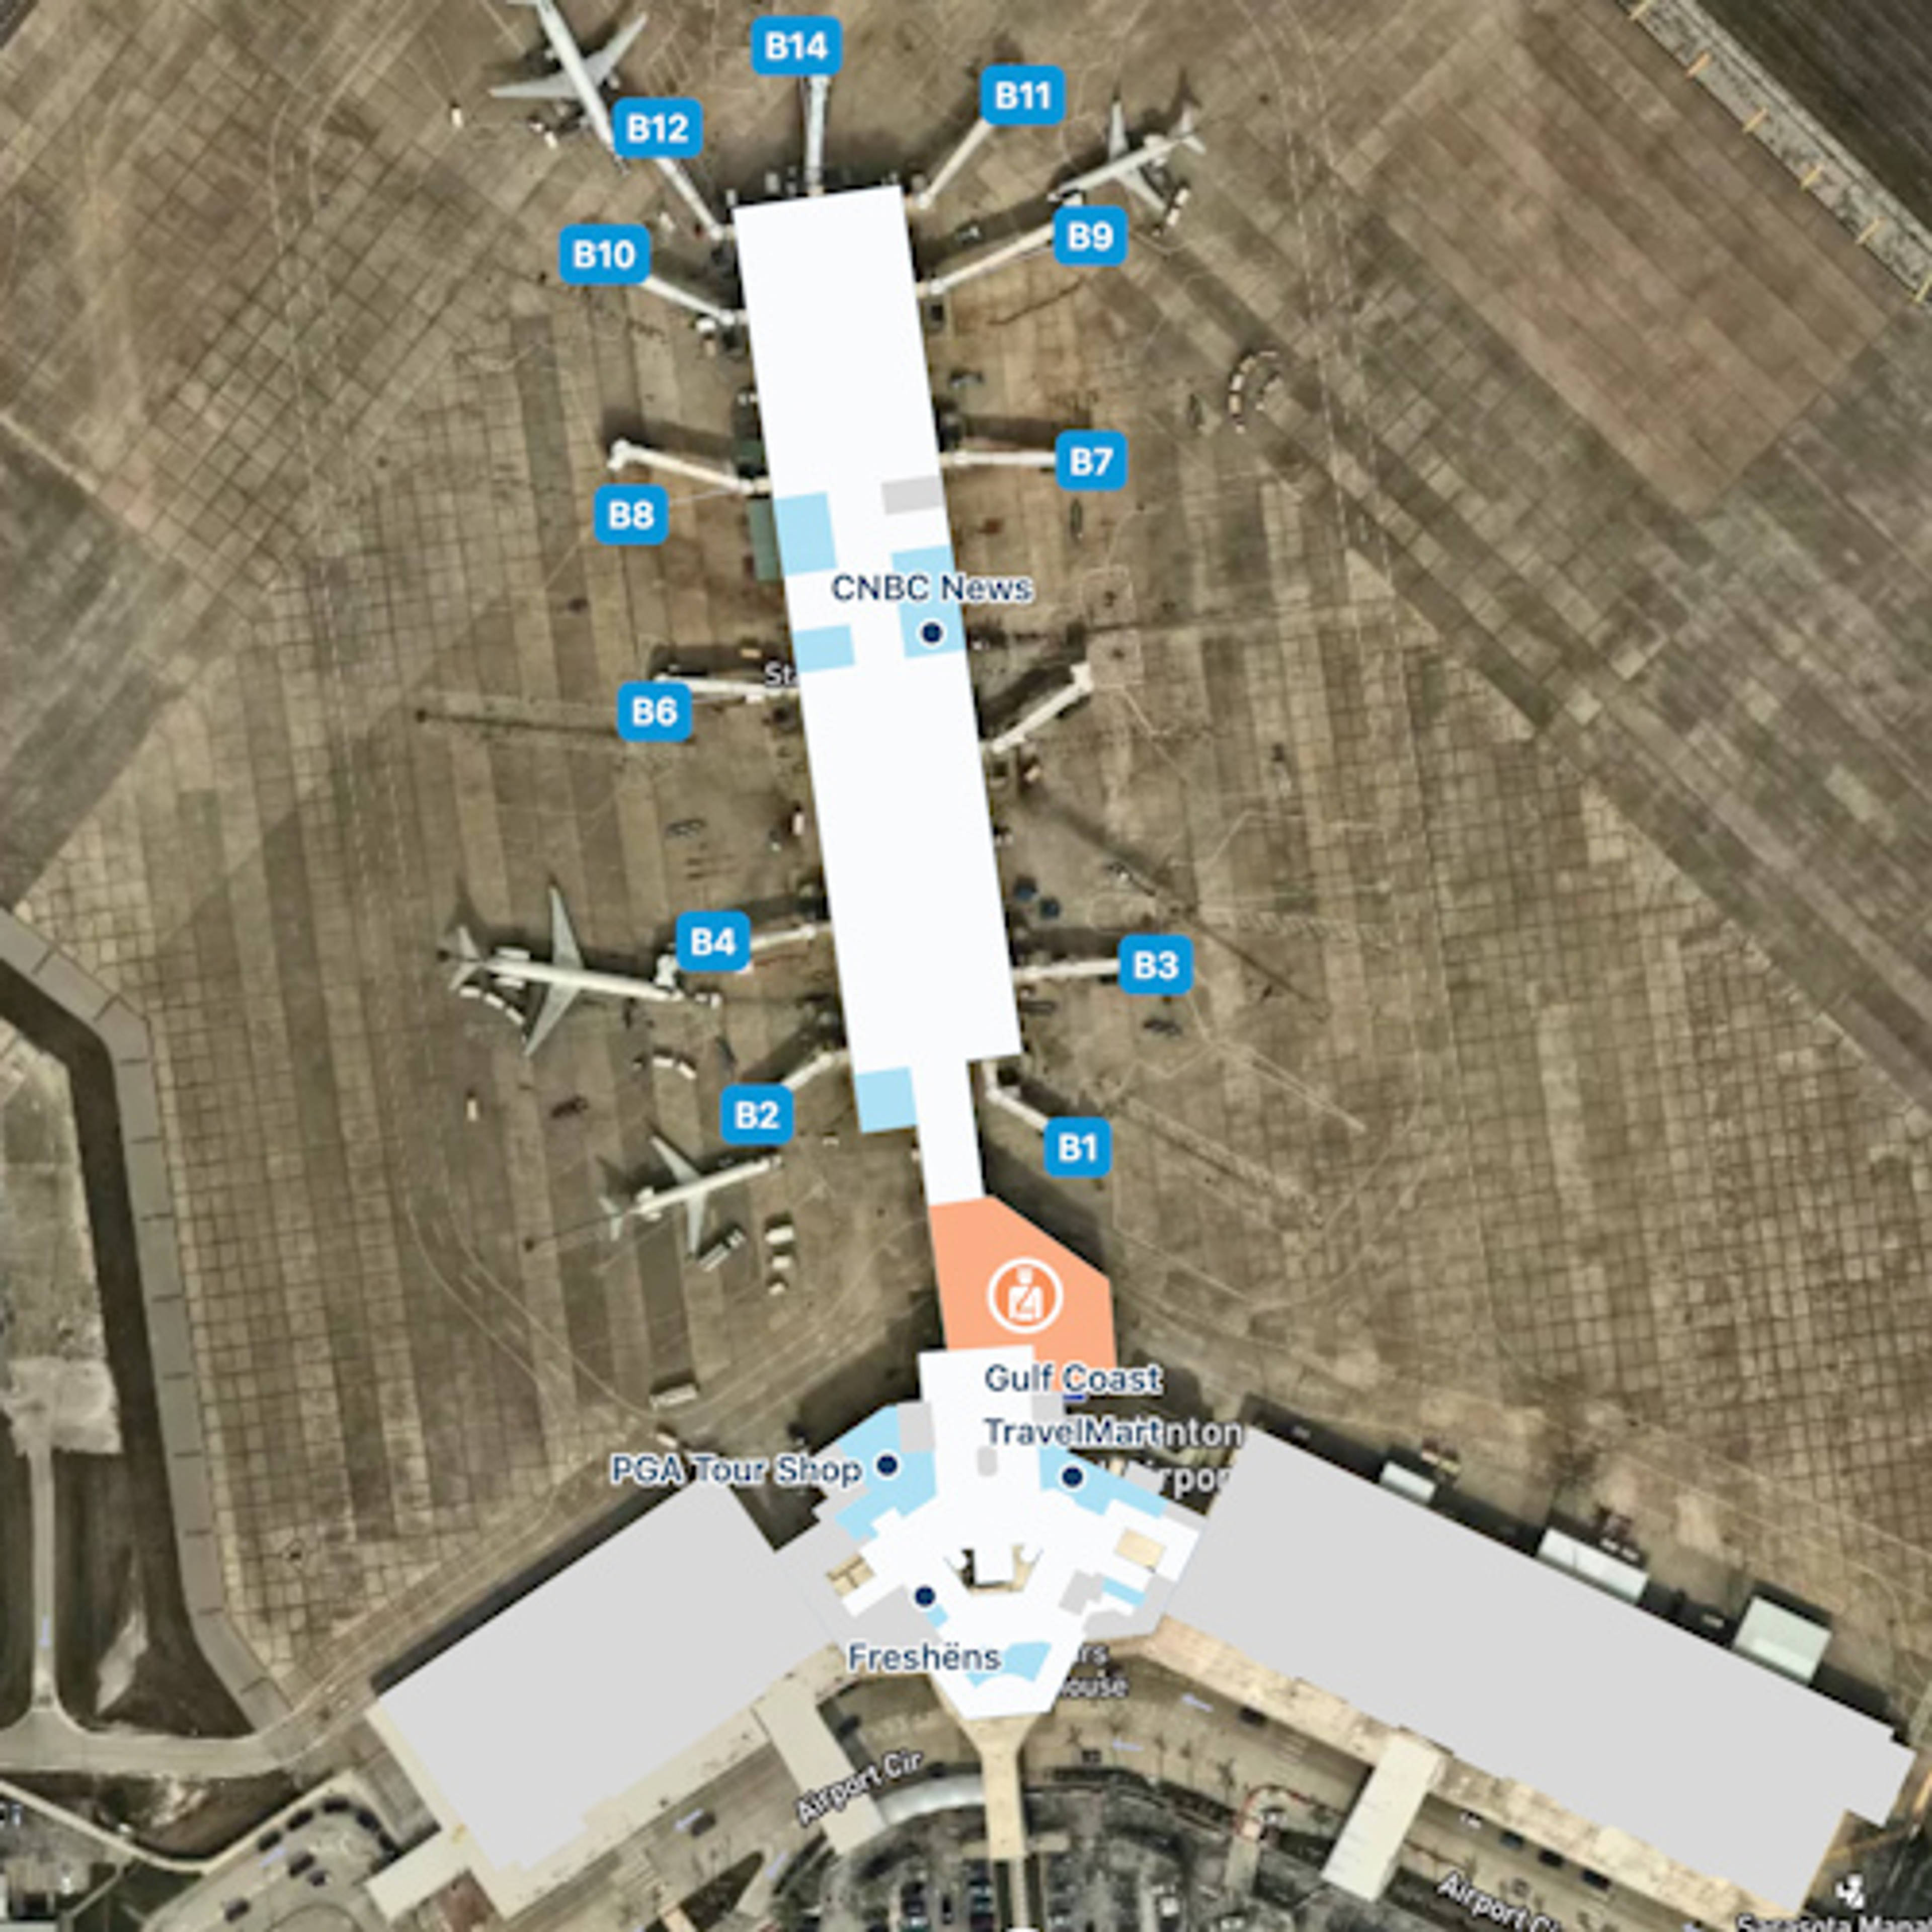 Sarasota Airport Overview Map